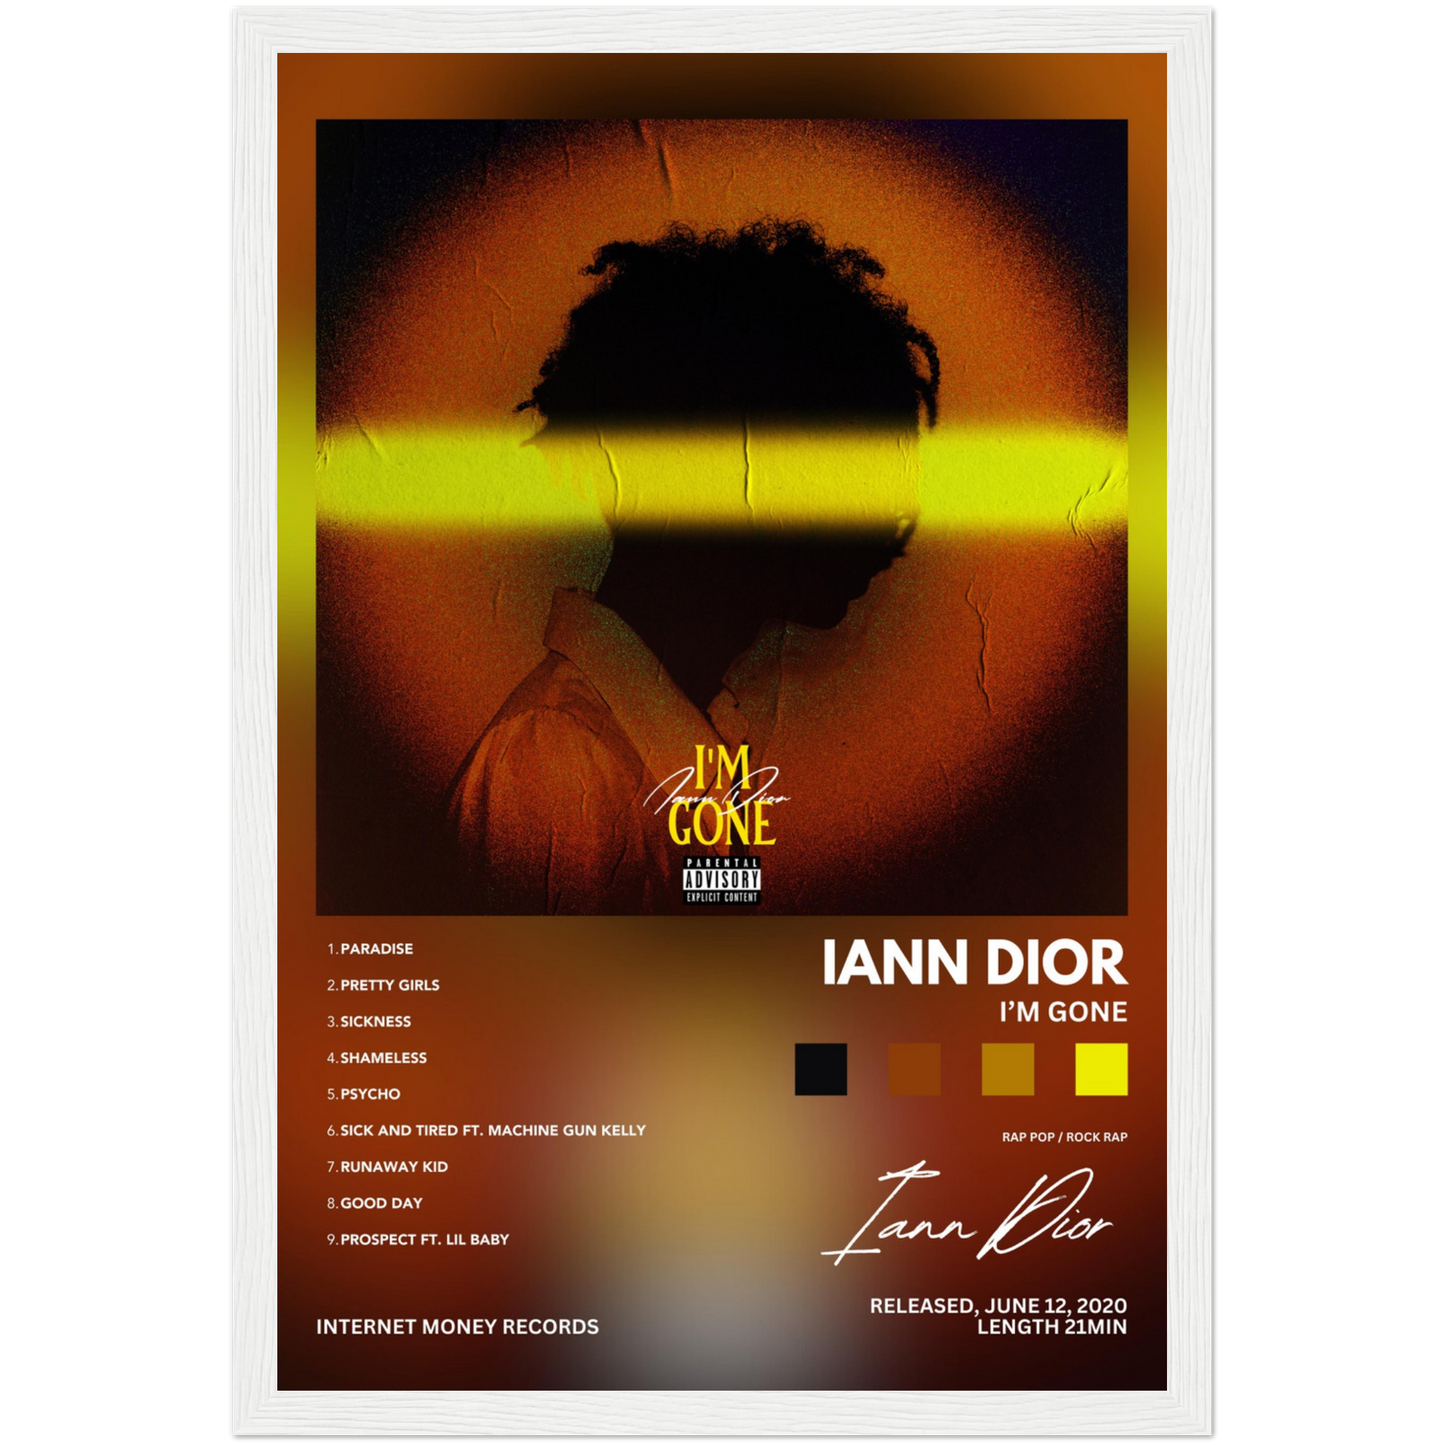 Iann Dior 'I'm Gone' Album